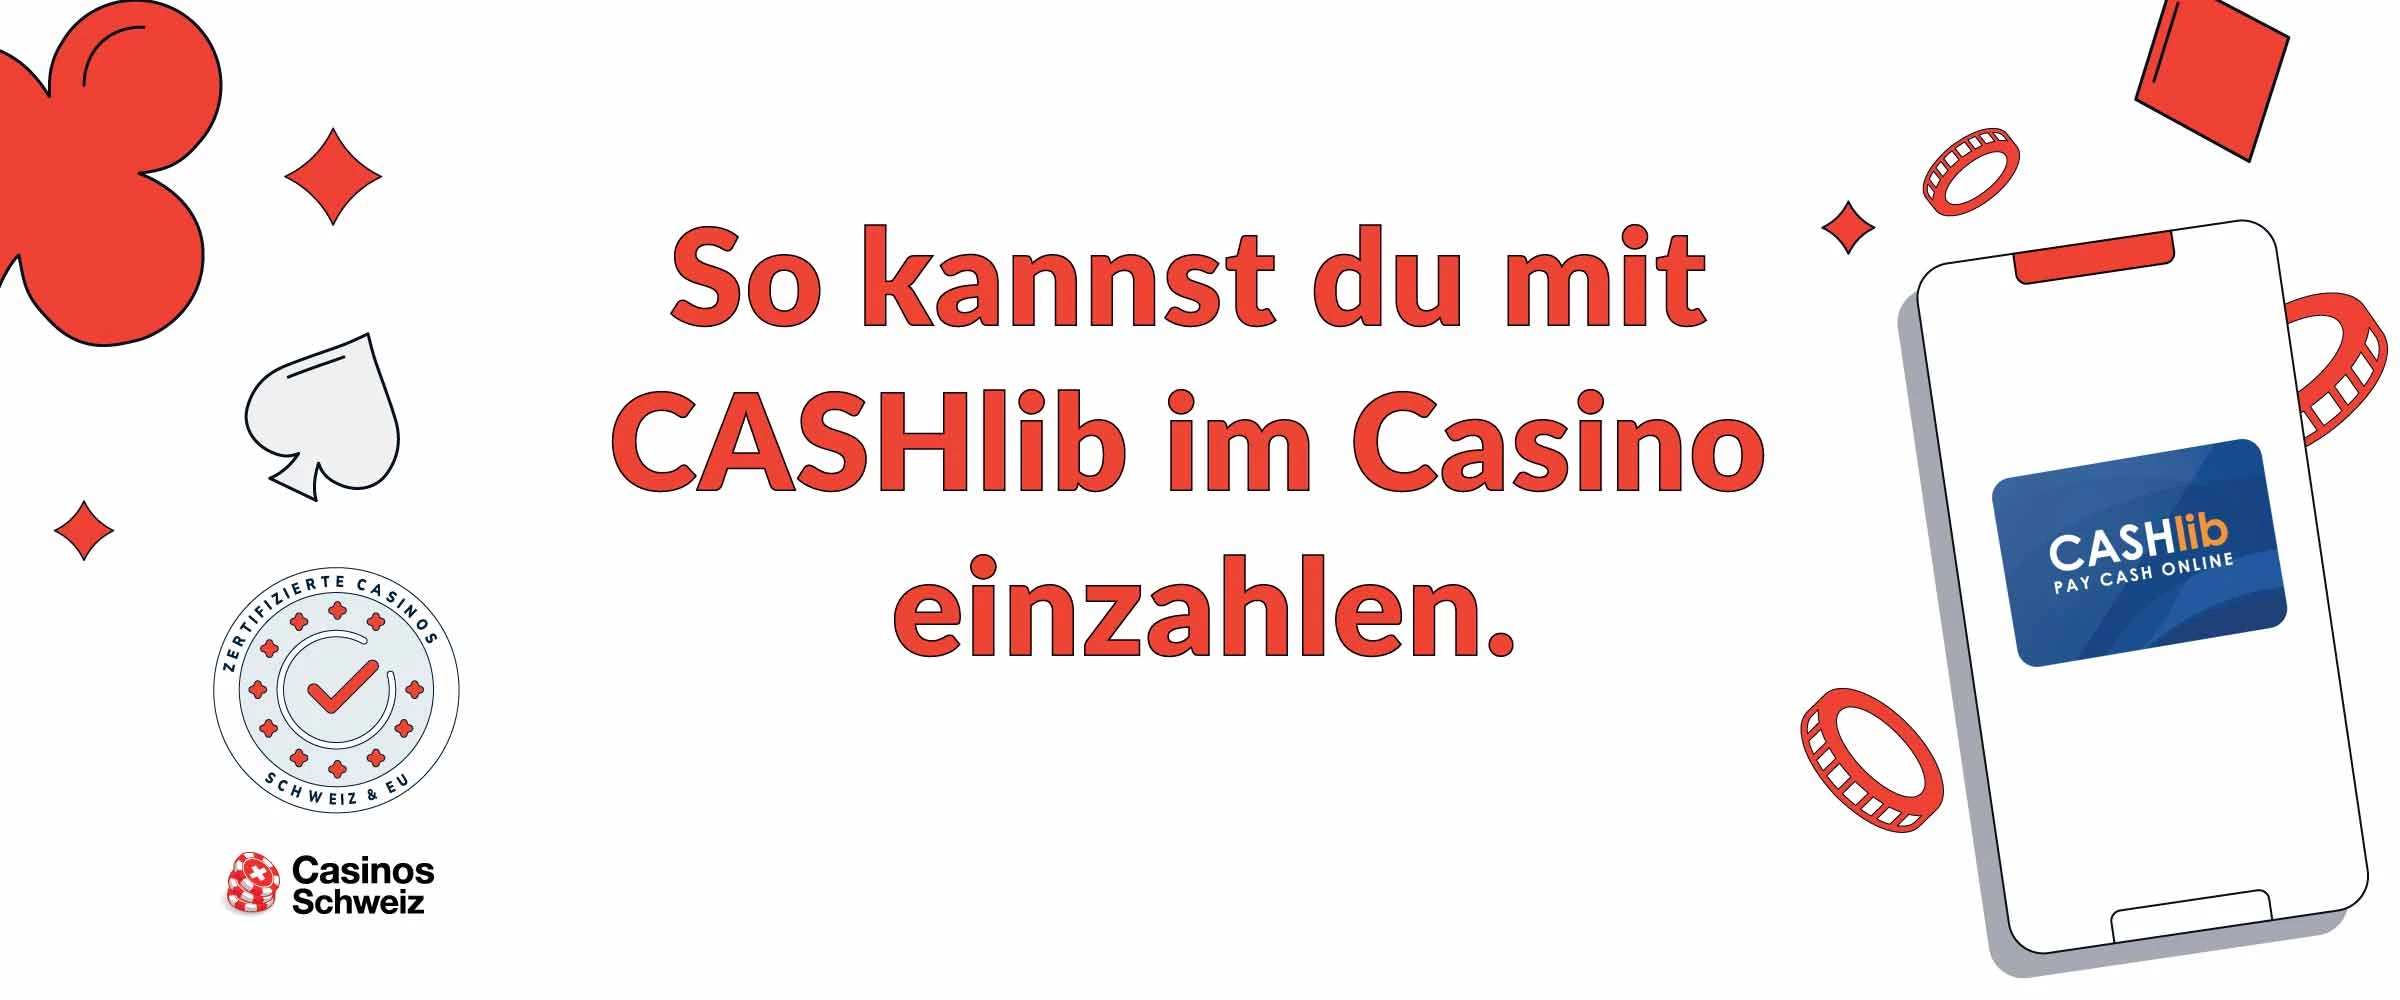 CASHlib Casino Einzahlen